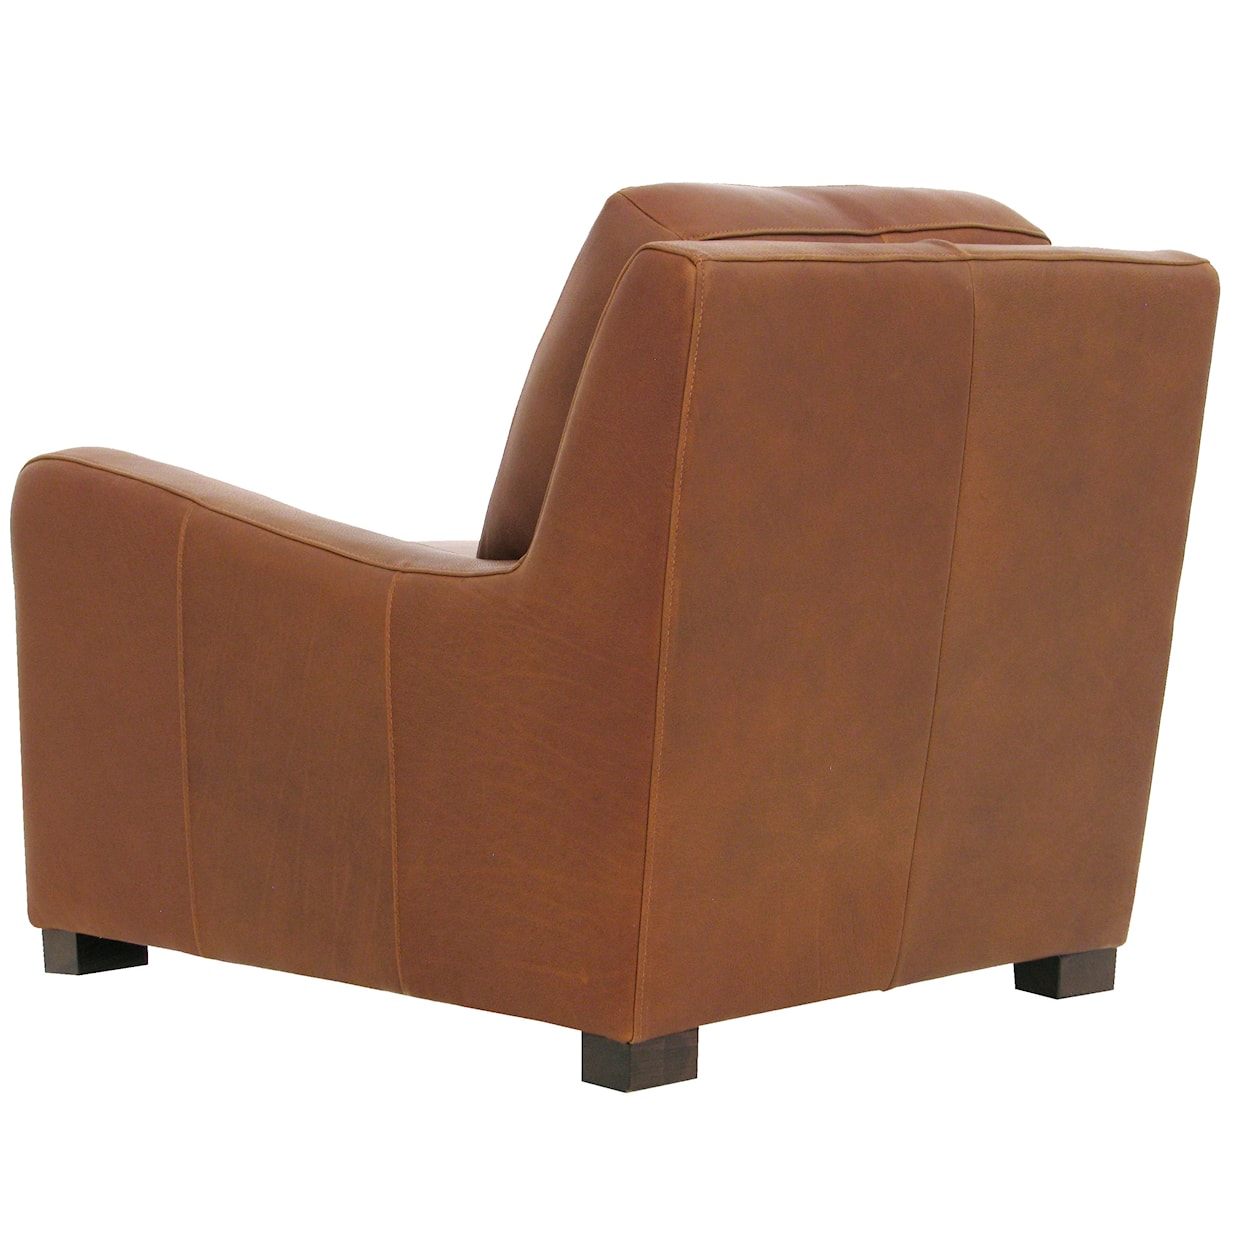 Virginia Furniture Market Premium Leather 7740 Chair